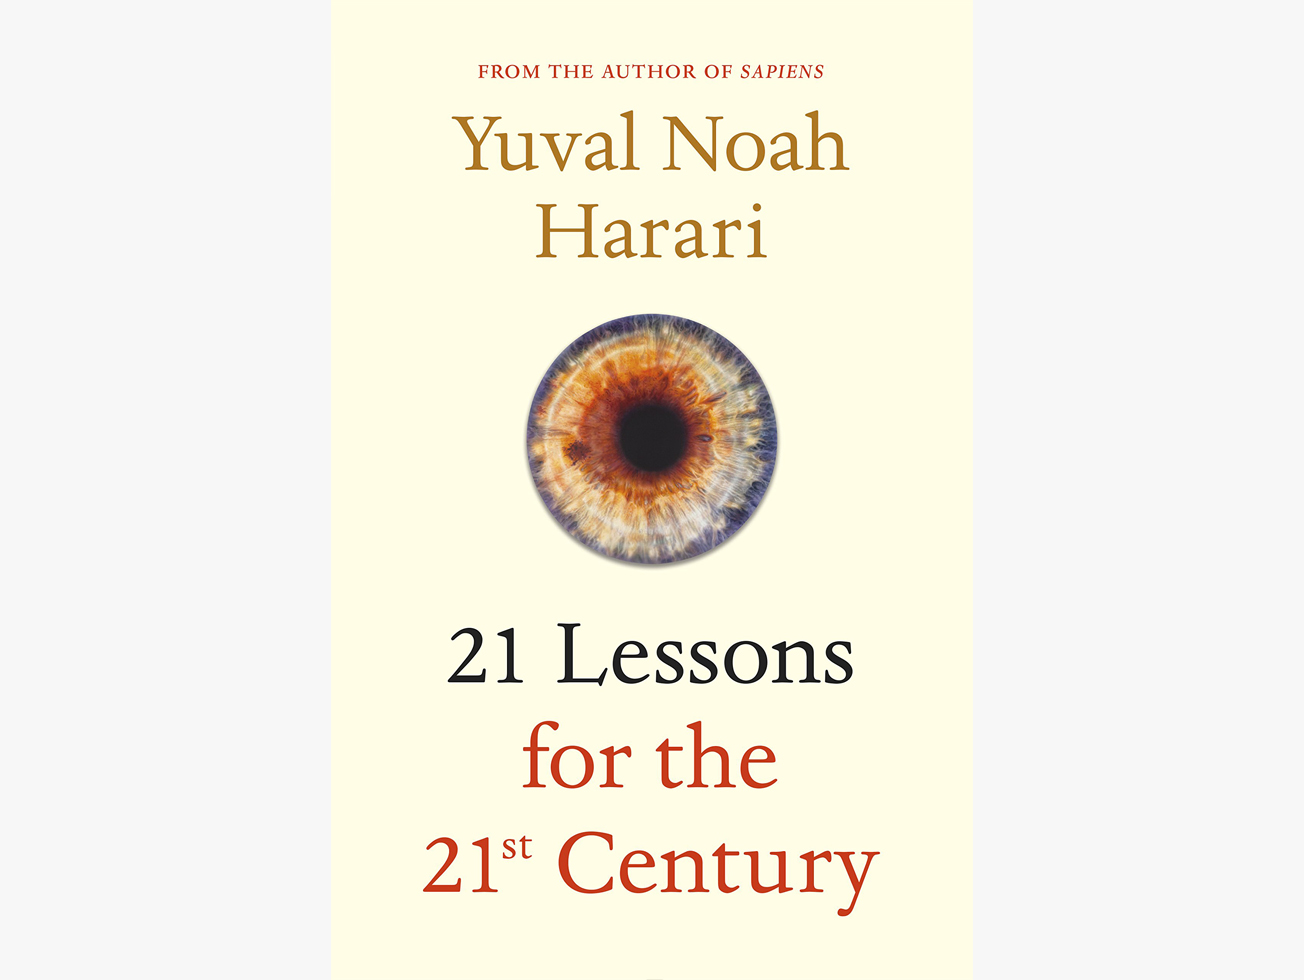 รีวิวและสรุปหนังสือ 21 Lessons for the 21st Century ของอาจารย์ yuval noah harari